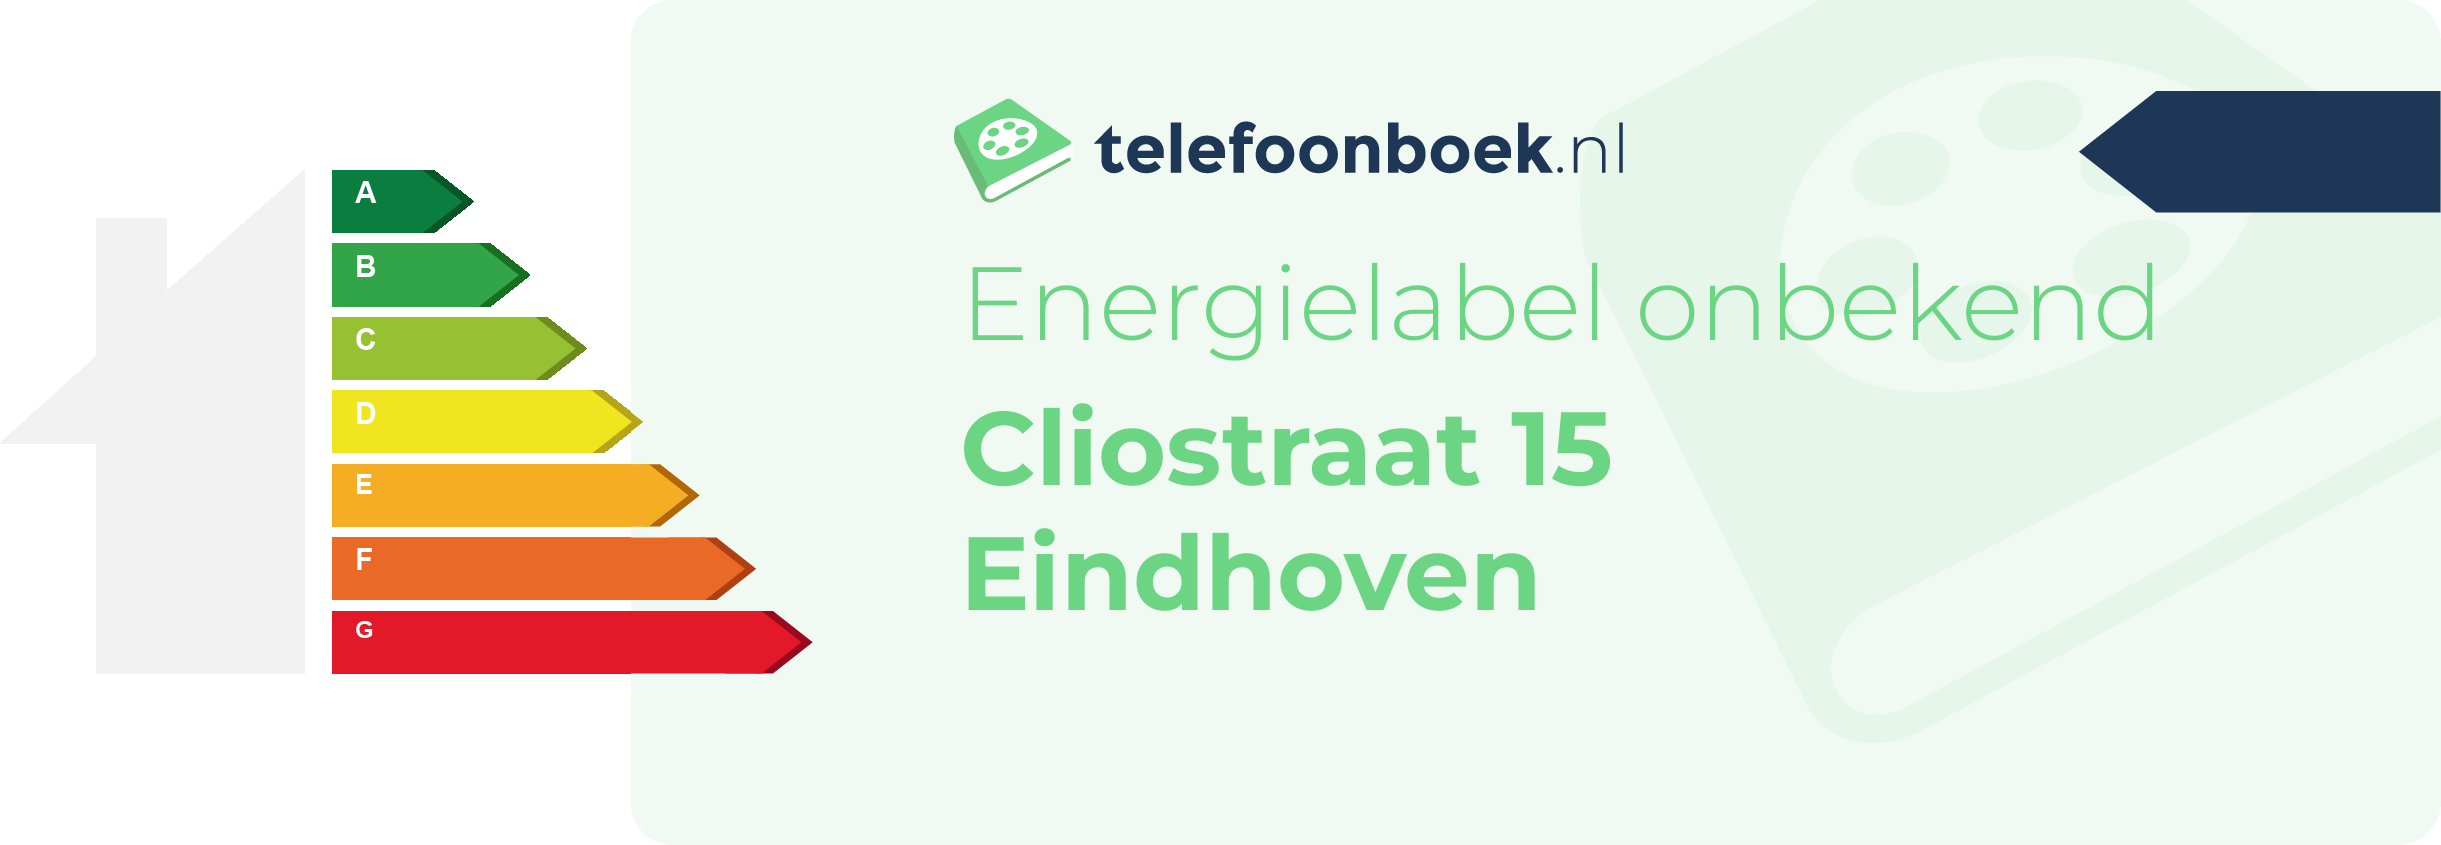 Energielabel Cliostraat 15 Eindhoven